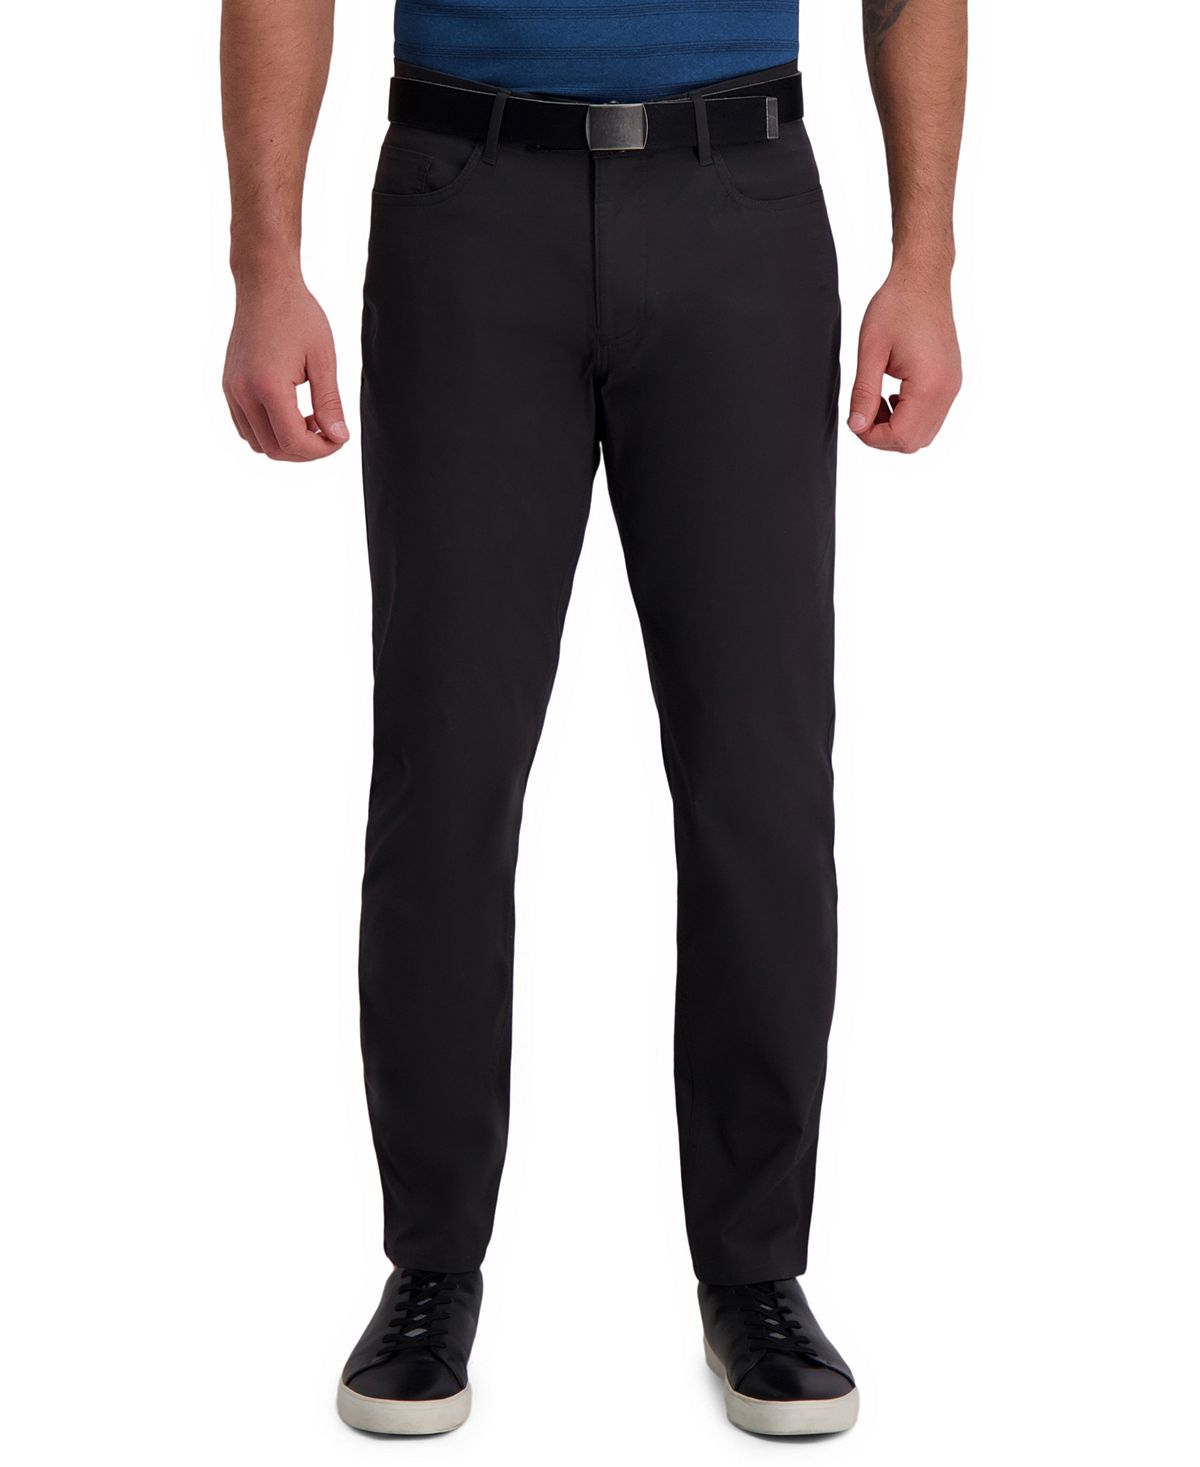 цена Повседневные брюки active series city flex traveler slim fit flat front с 5 карманами (рипстоп) Haggar